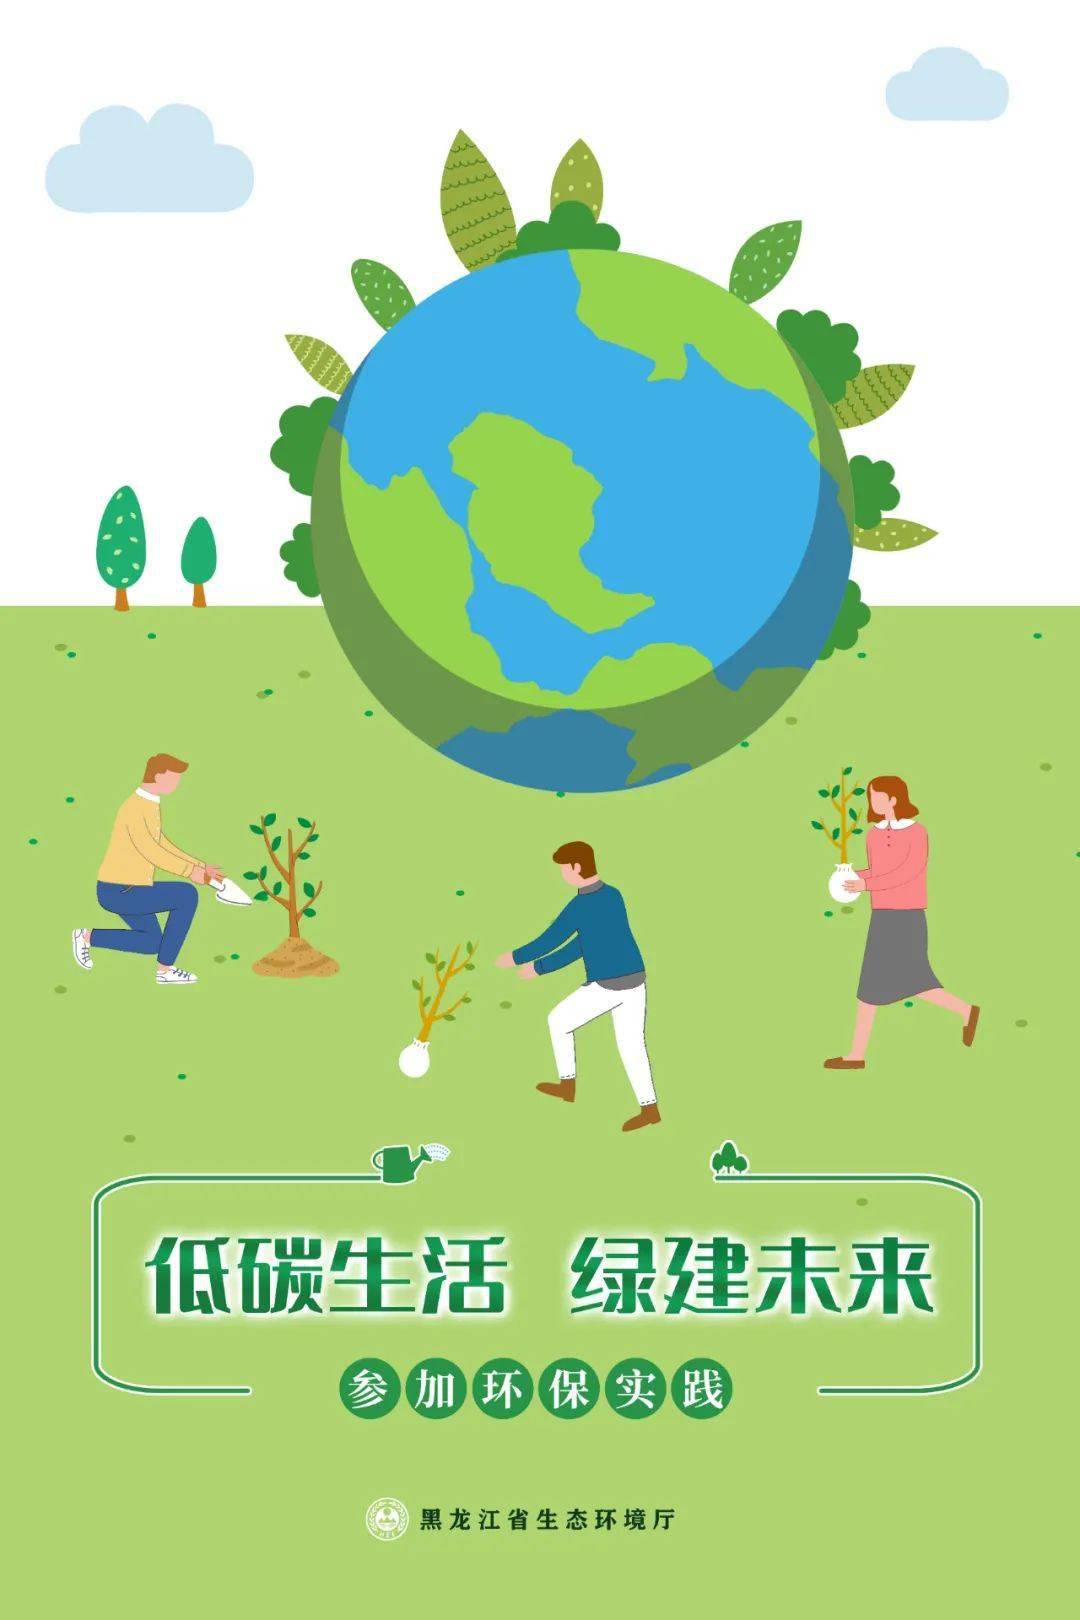 低碳日①丨海报发布:低碳生活,绿建未来